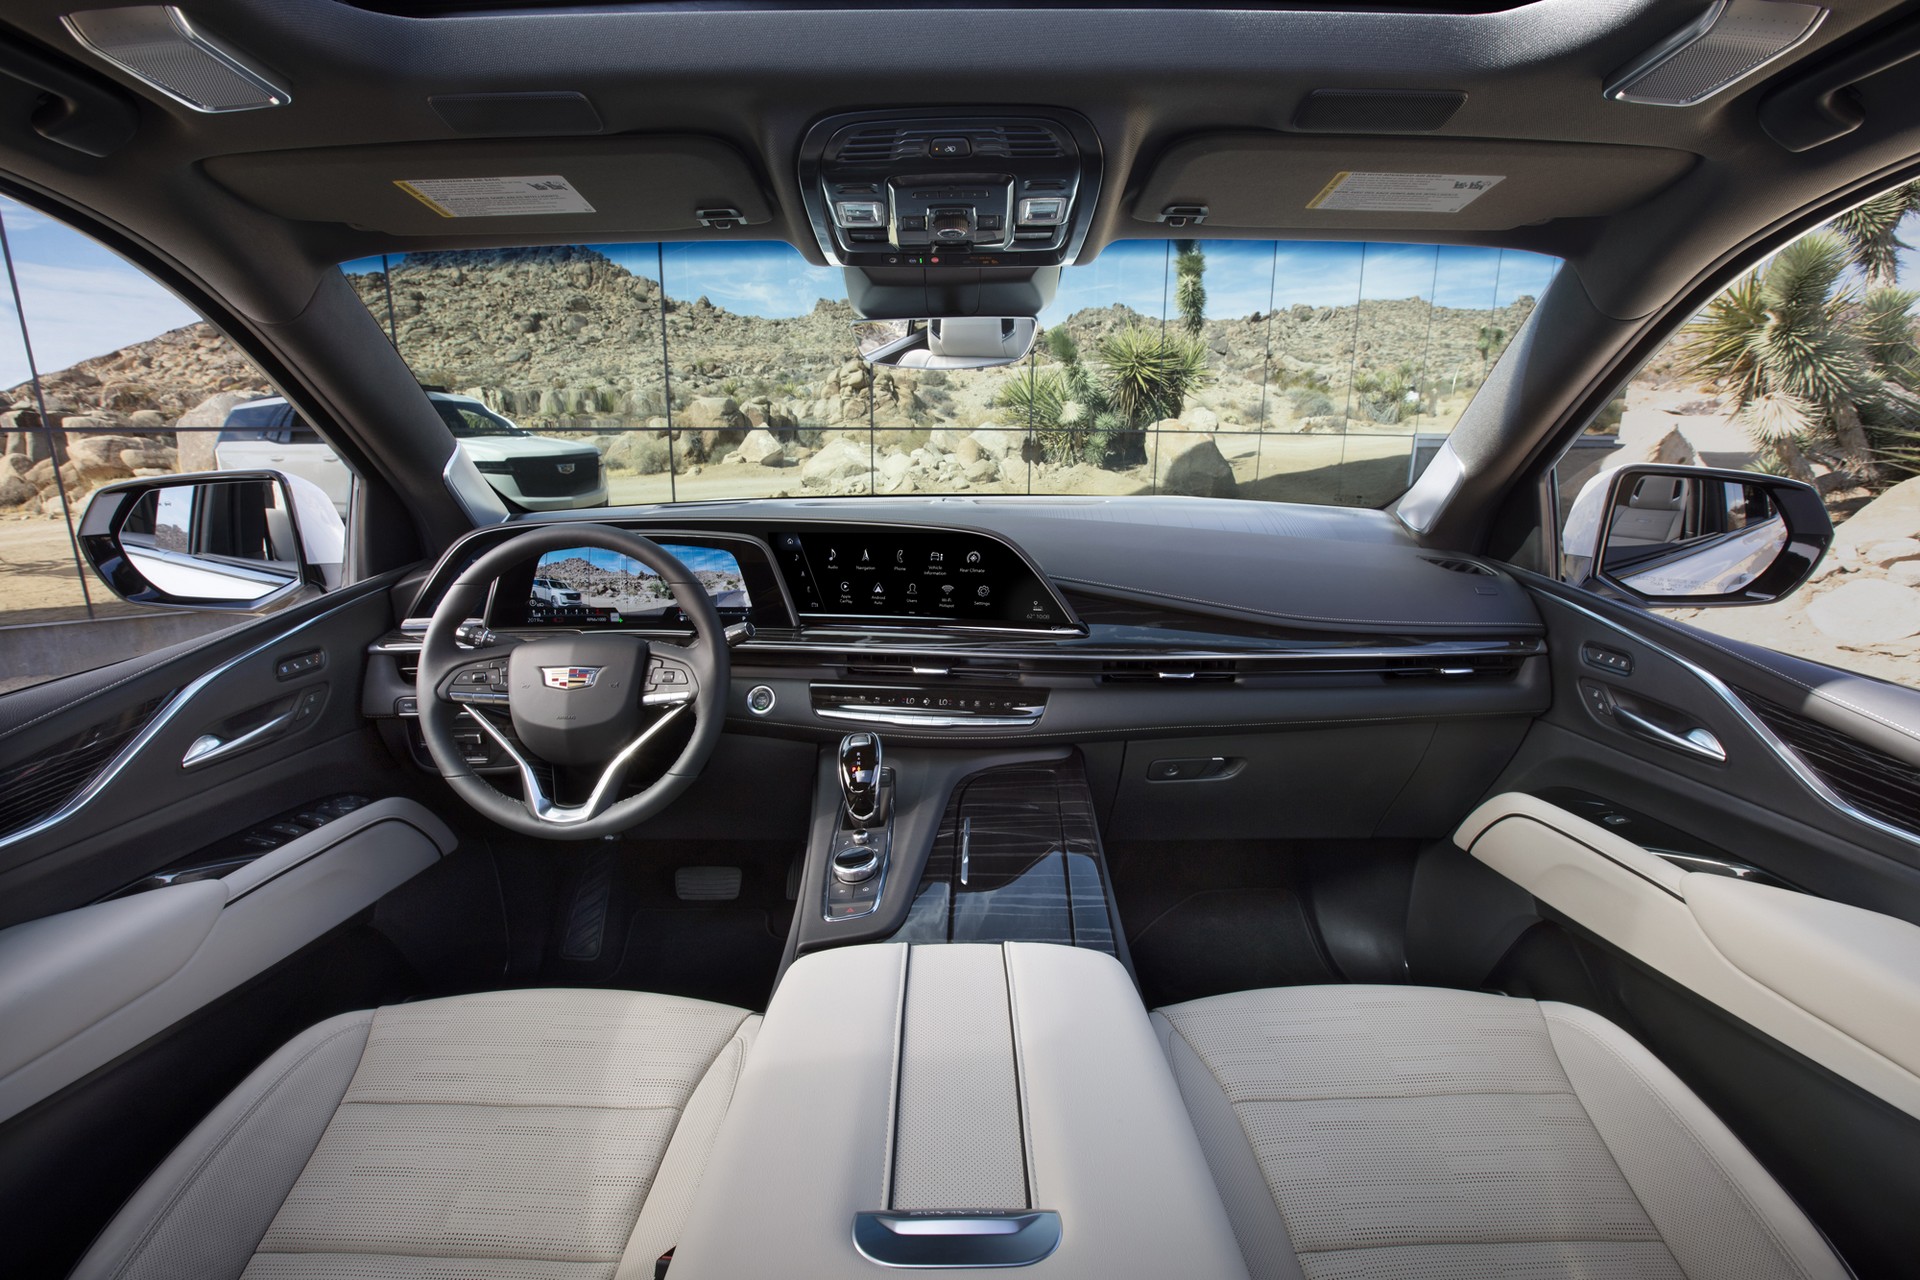 LG'nin kavisli OLED ekranları ilk kez bir araçta kullanıldı: 2021 Cadillac Escalade